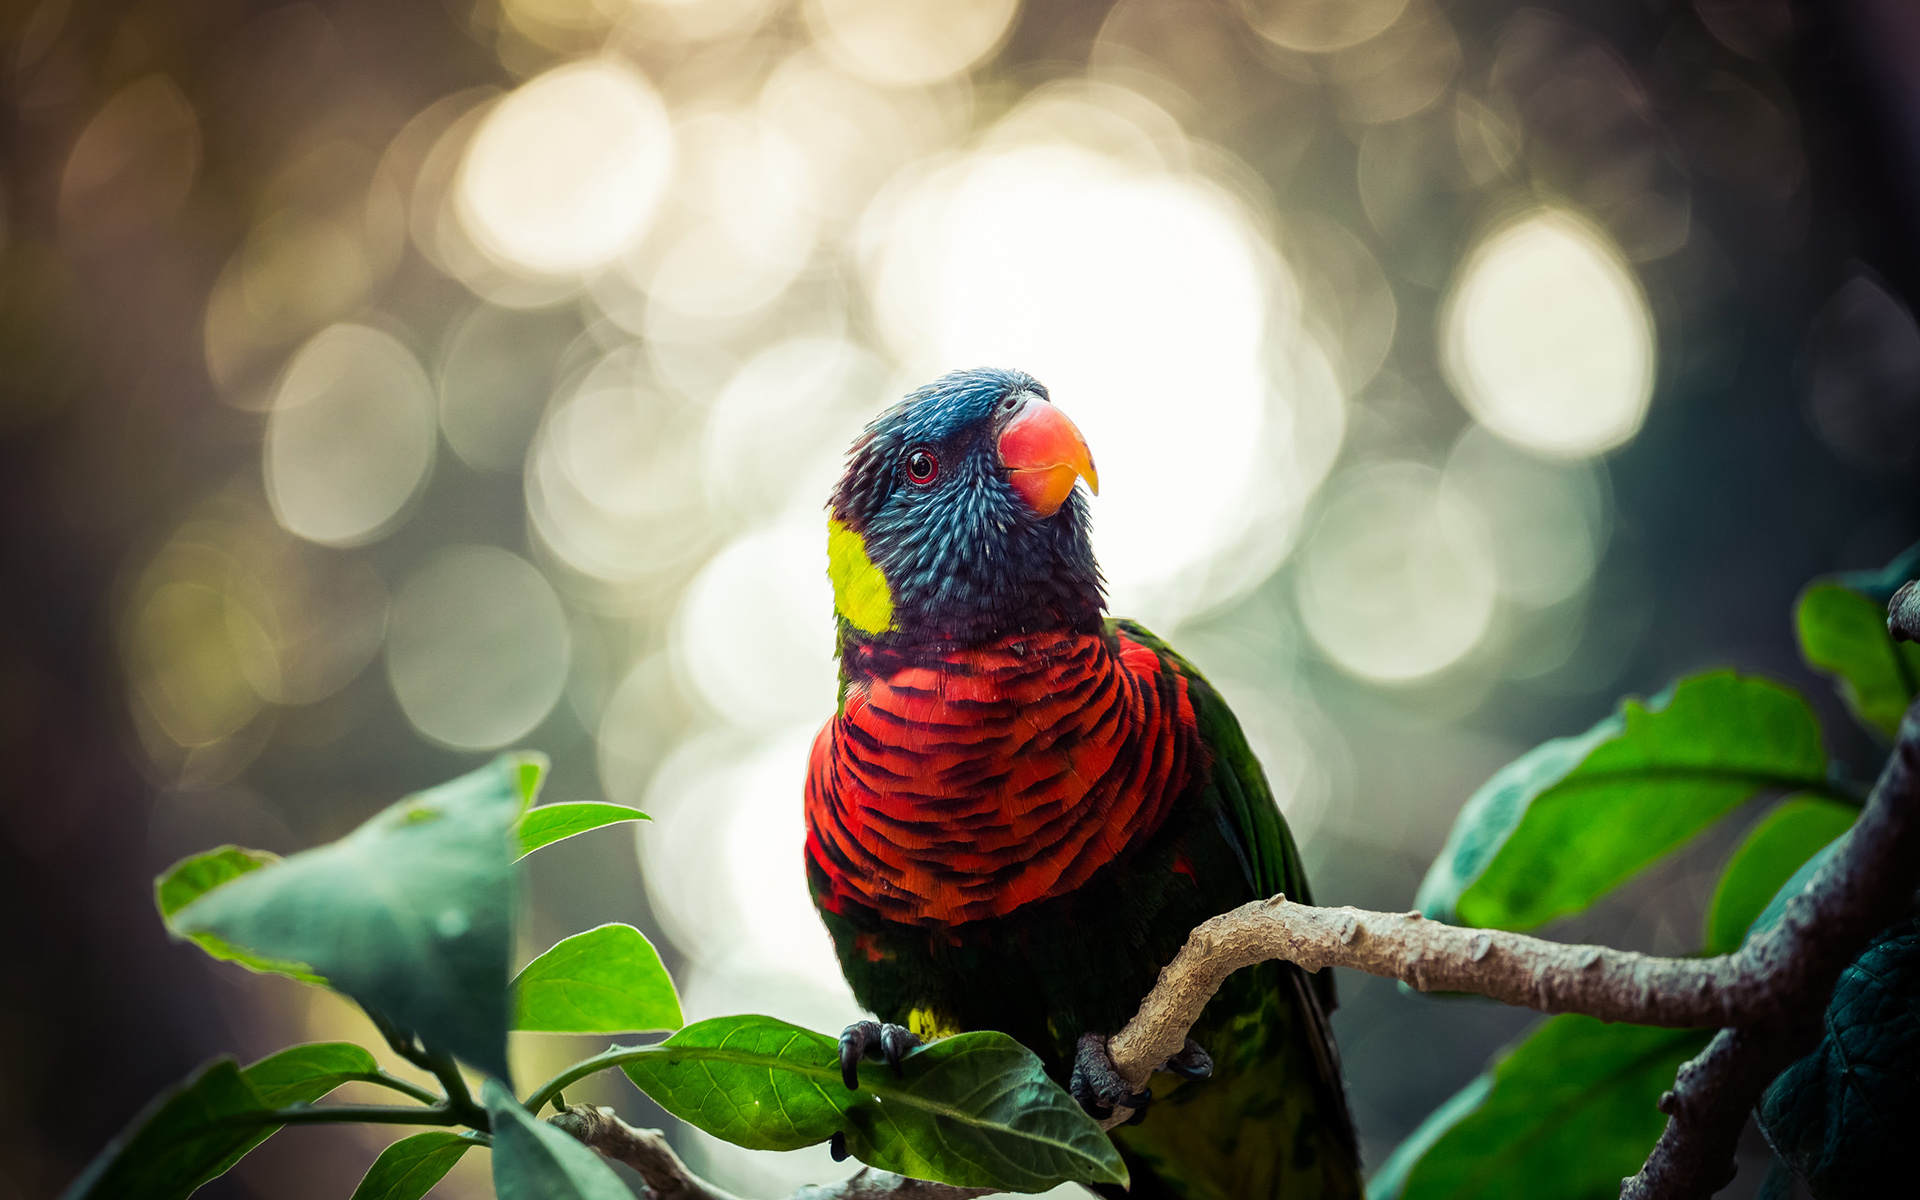 Descarga gratuita de fondo de pantalla para móvil de Animales, Naturaleza, Pájaro, Loro Arcoiris.